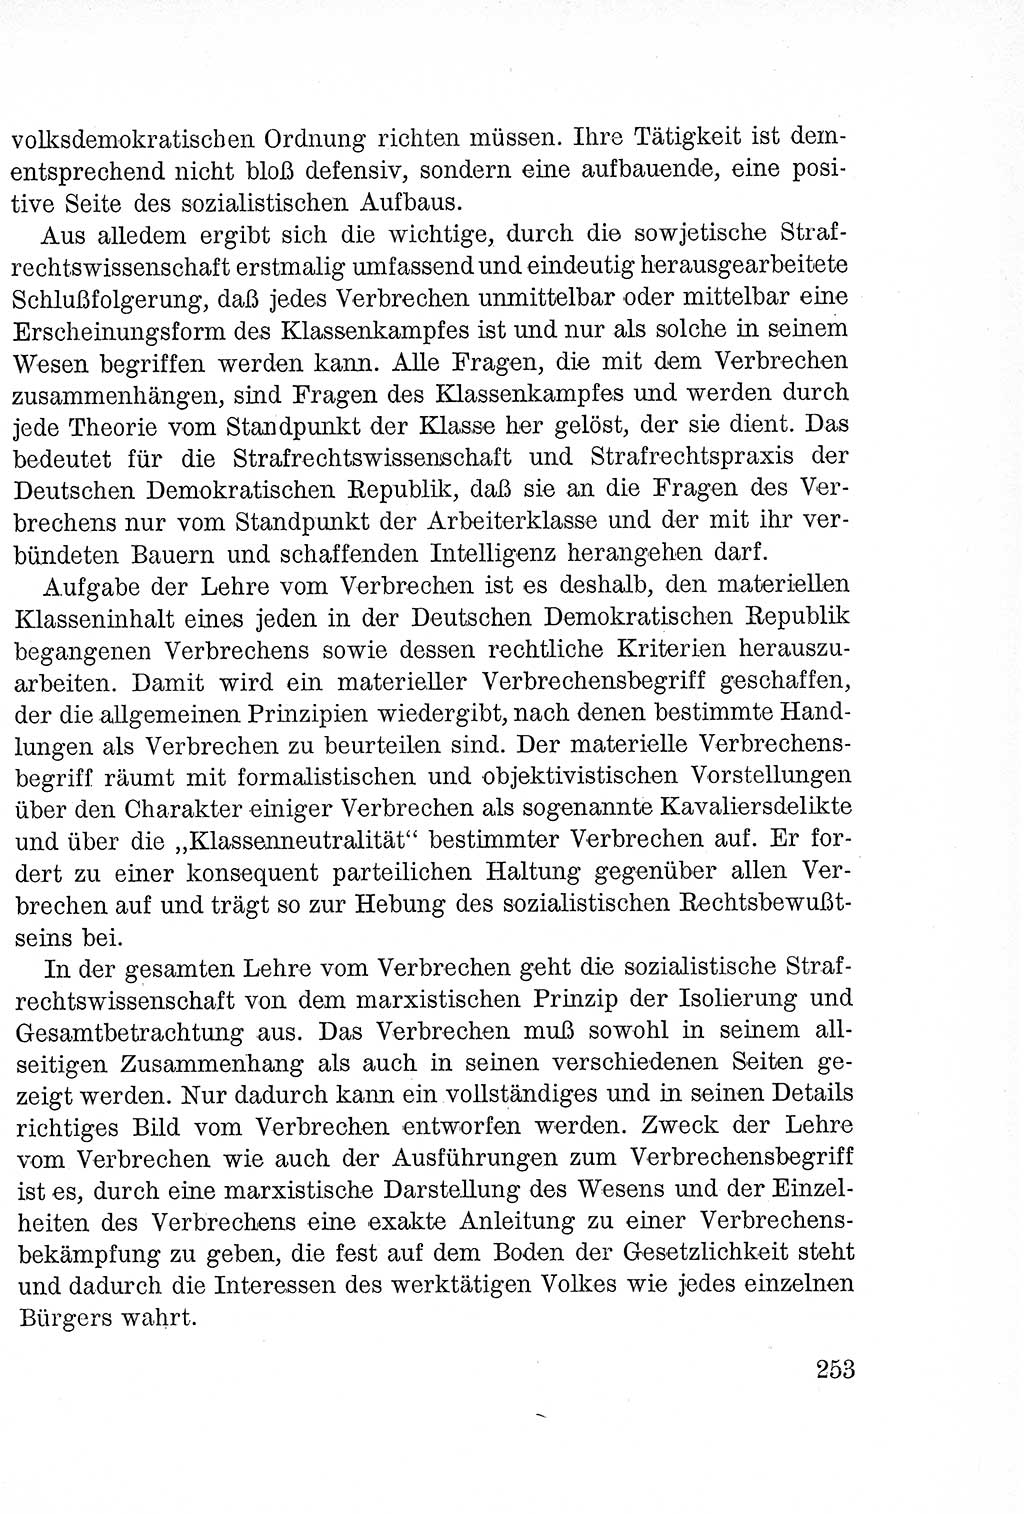 Lehrbuch des Strafrechts der Deutschen Demokratischen Republik (DDR), Allgemeiner Teil 1957, Seite 253 (Lb. Strafr. DDR AT 1957, S. 253)